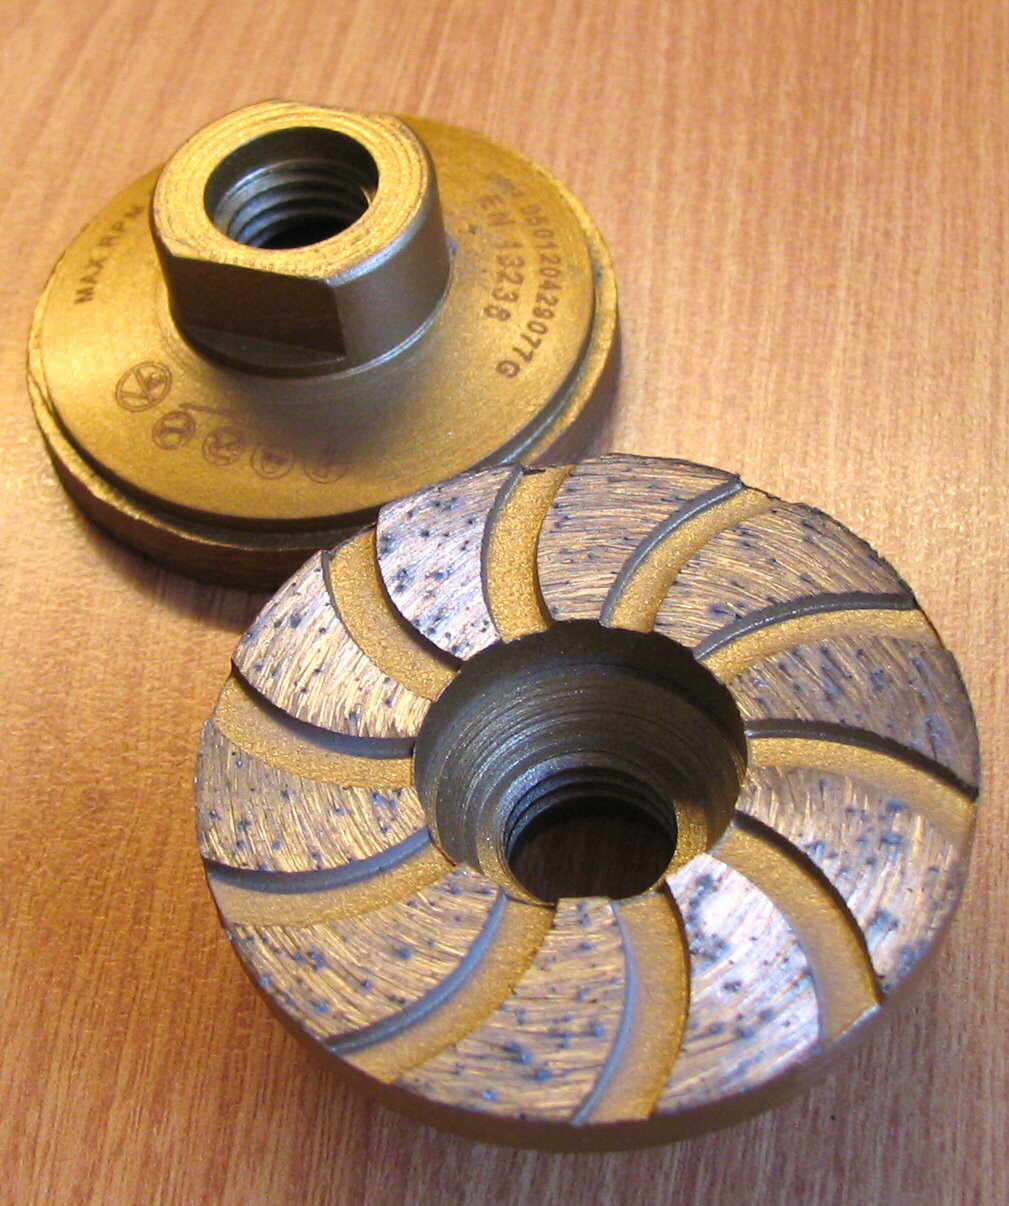 DSKc 50 mm Schleifteller
für Kleinreparaturren